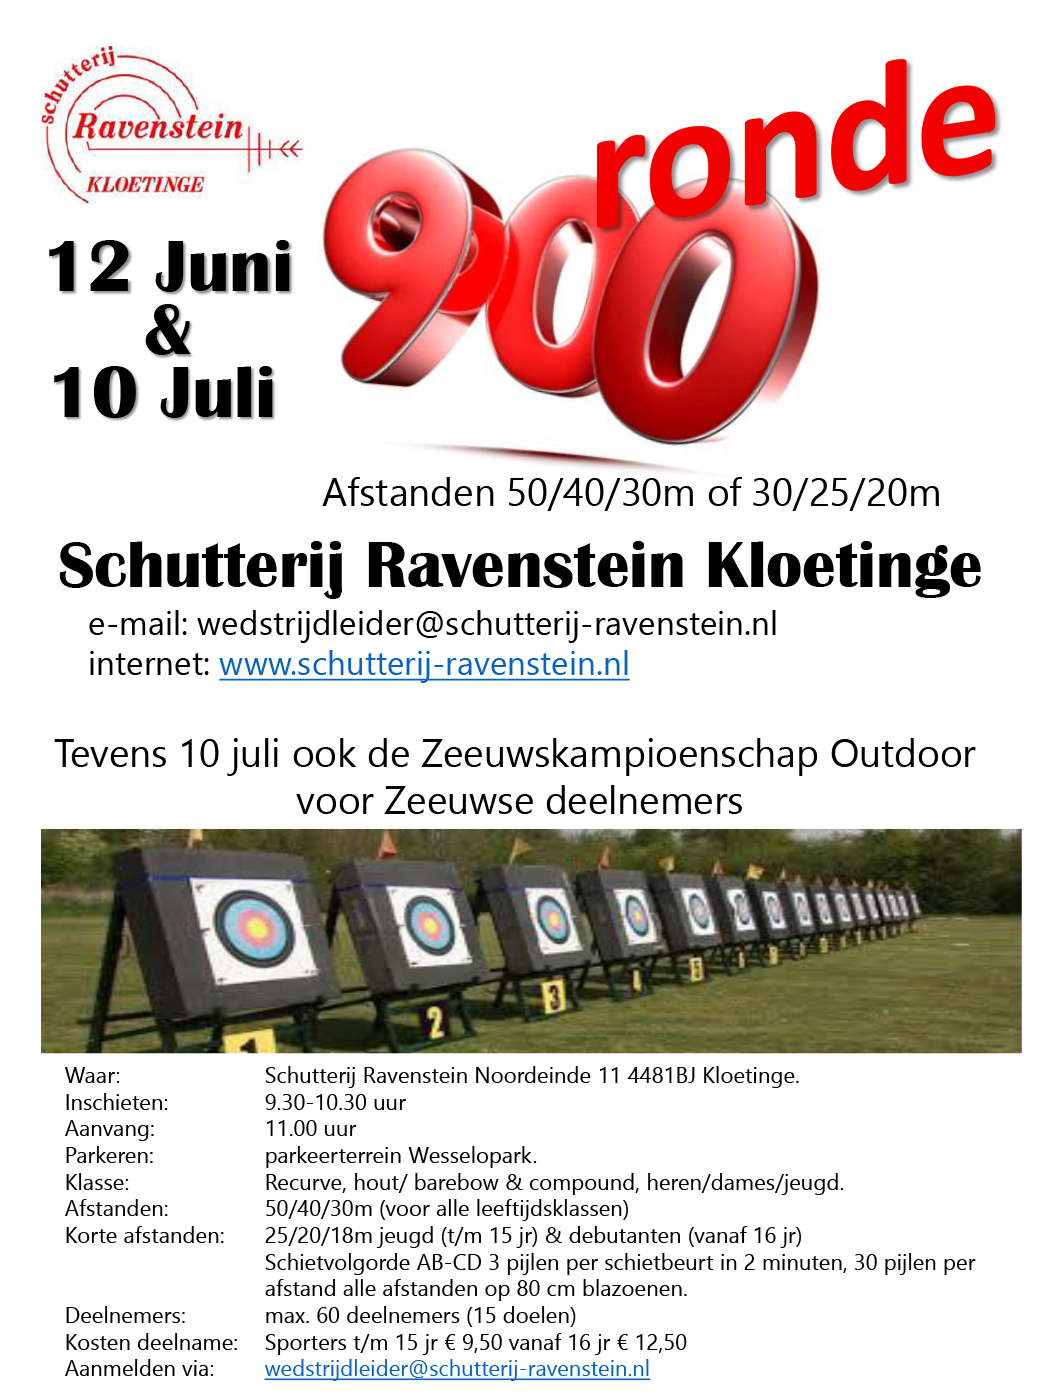 900 Rondes Schutterij Ravenstein